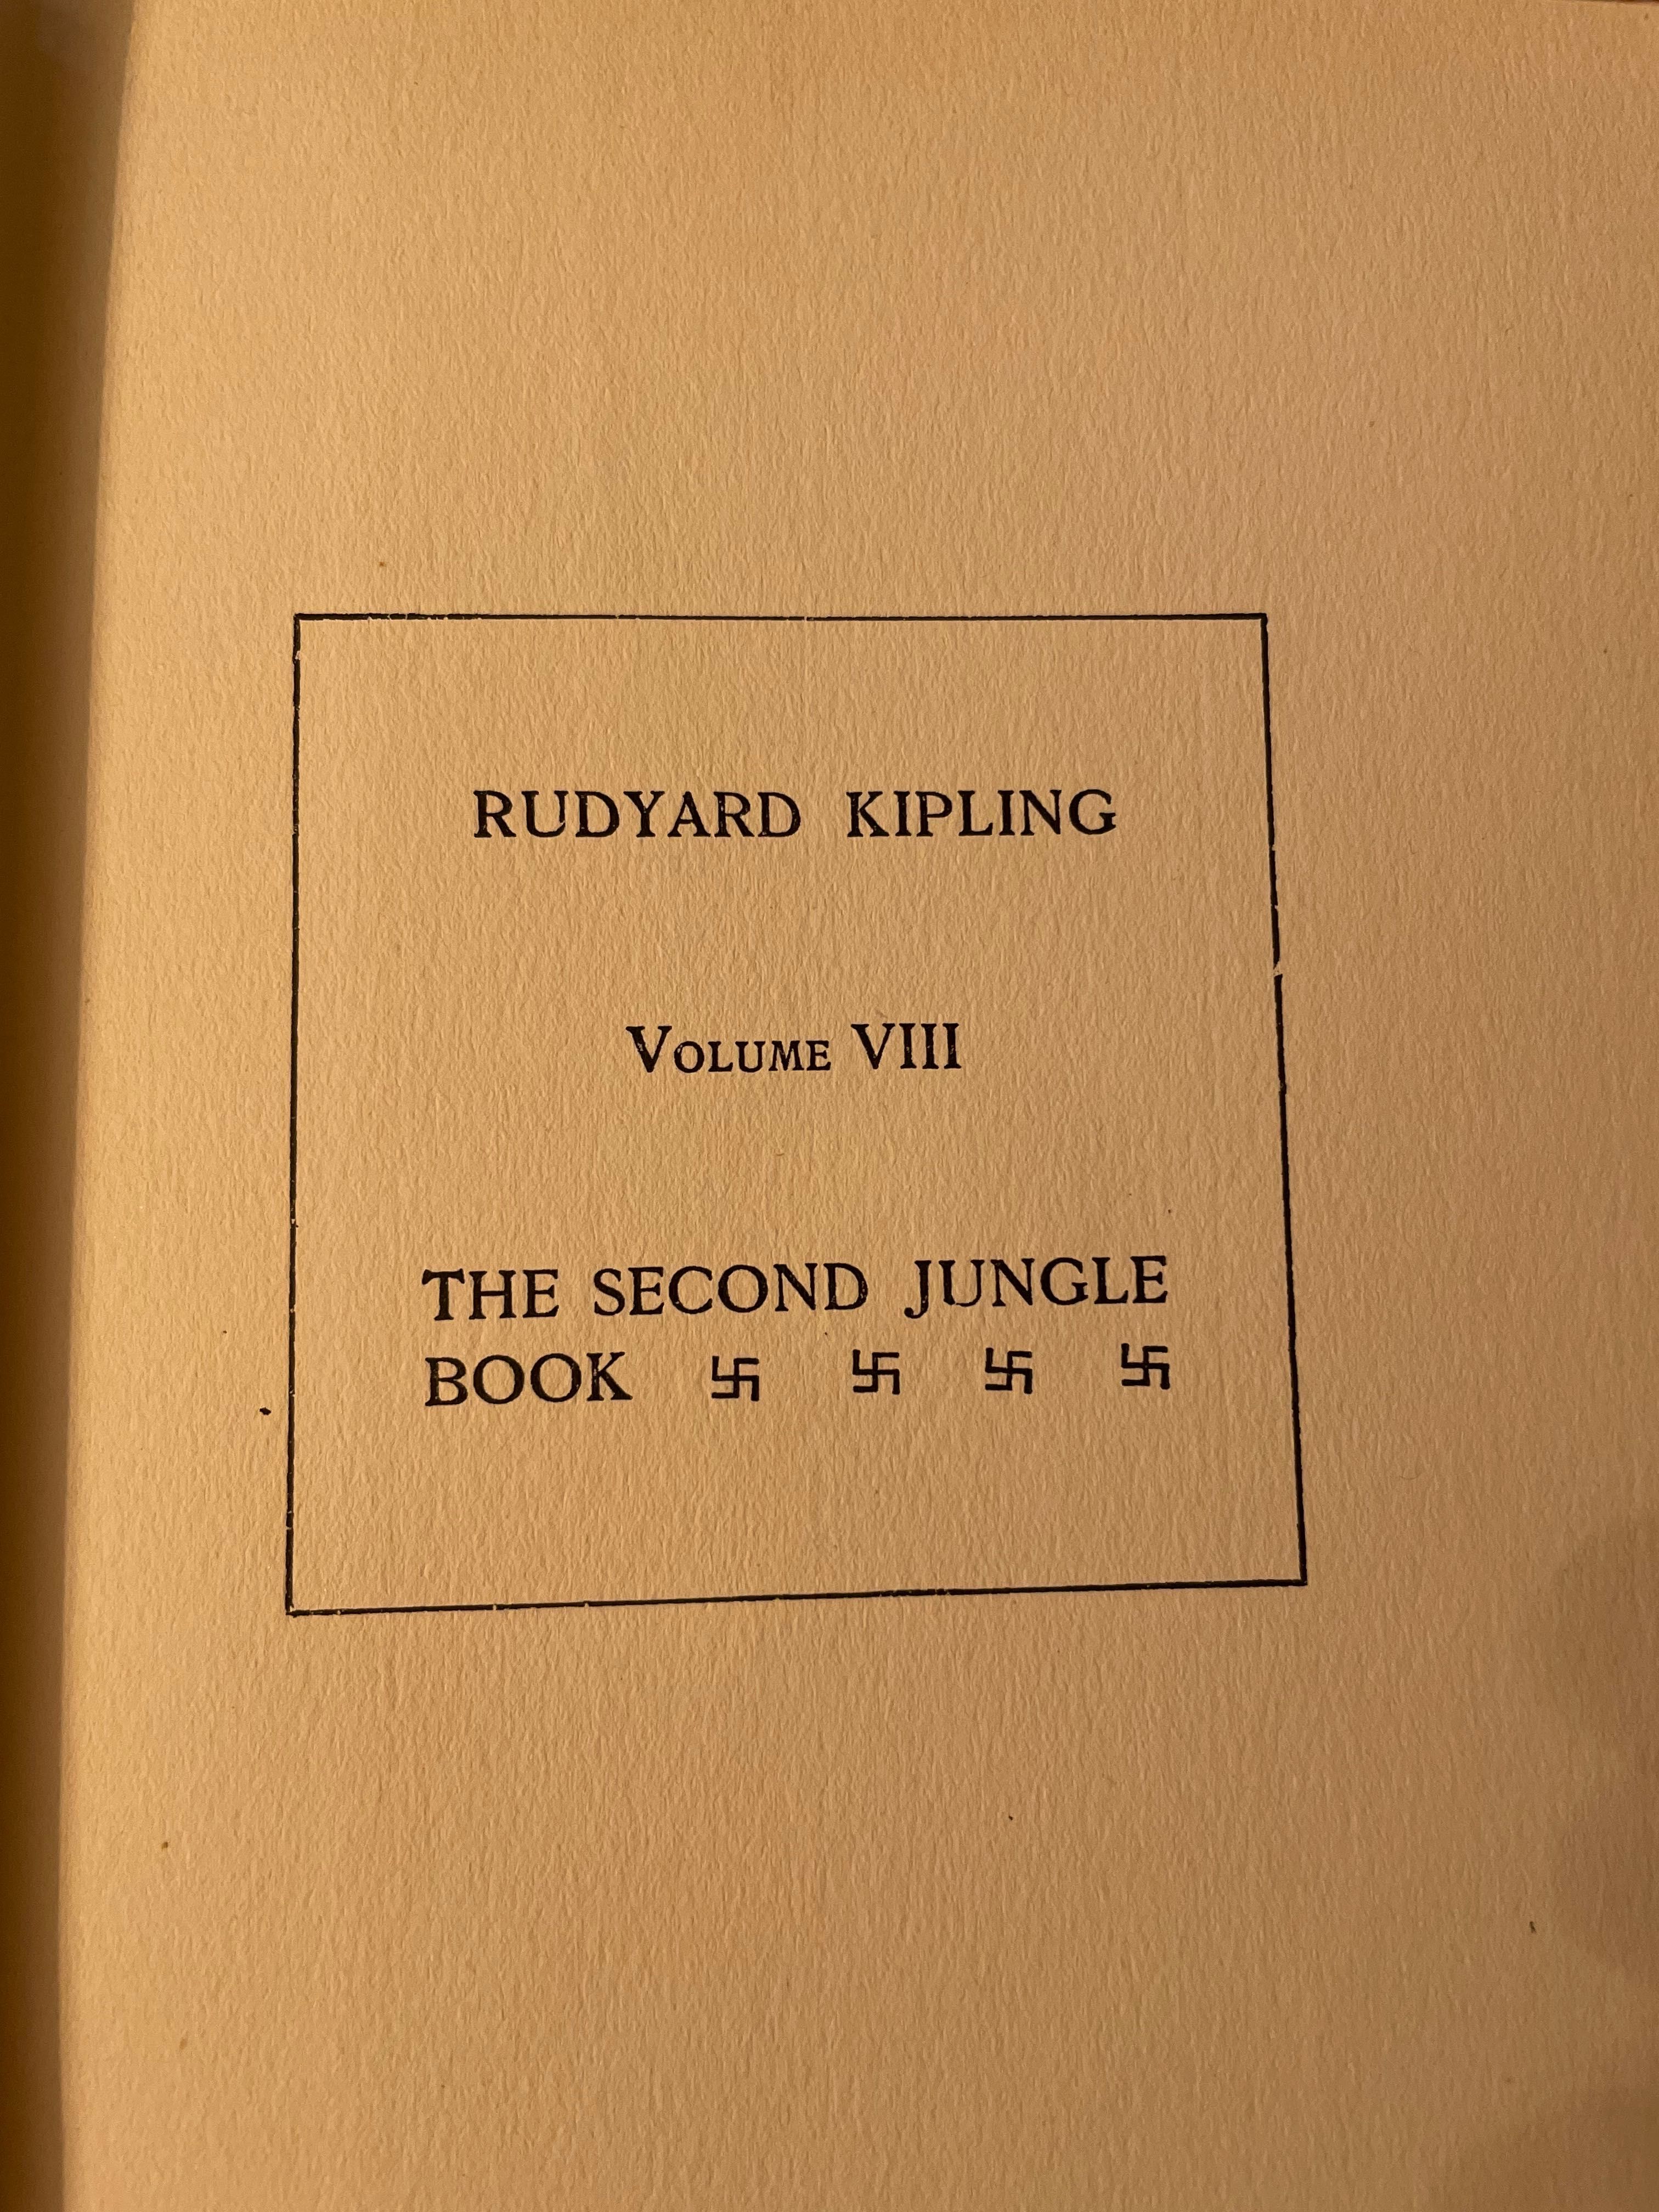 Собрание сочинений Рудиярда Киплинга на английском языке 1911г